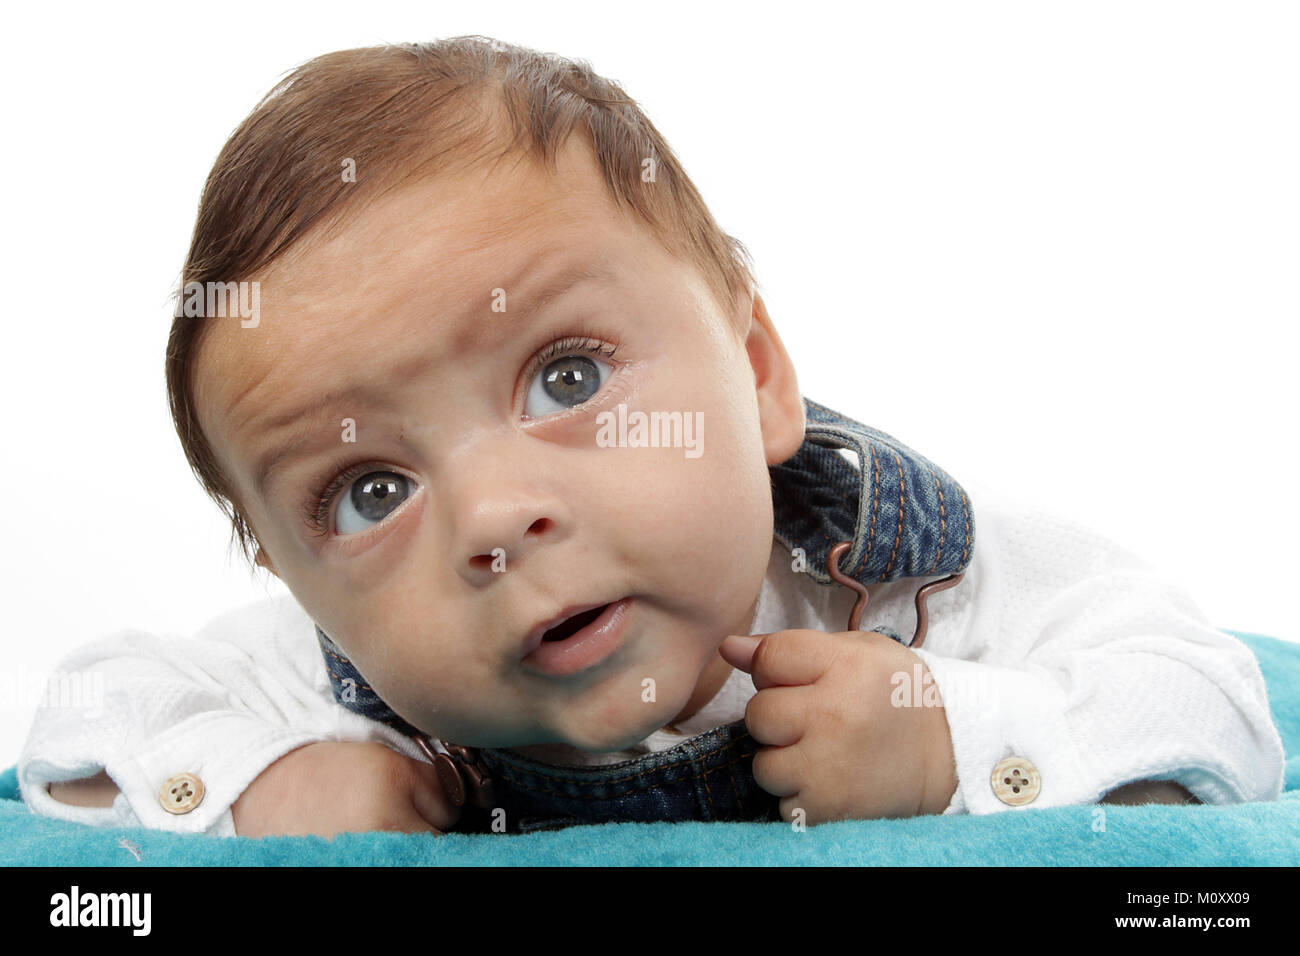 3 mese vecchia razza mista baby boy giocando su un tappeto Foto Stock